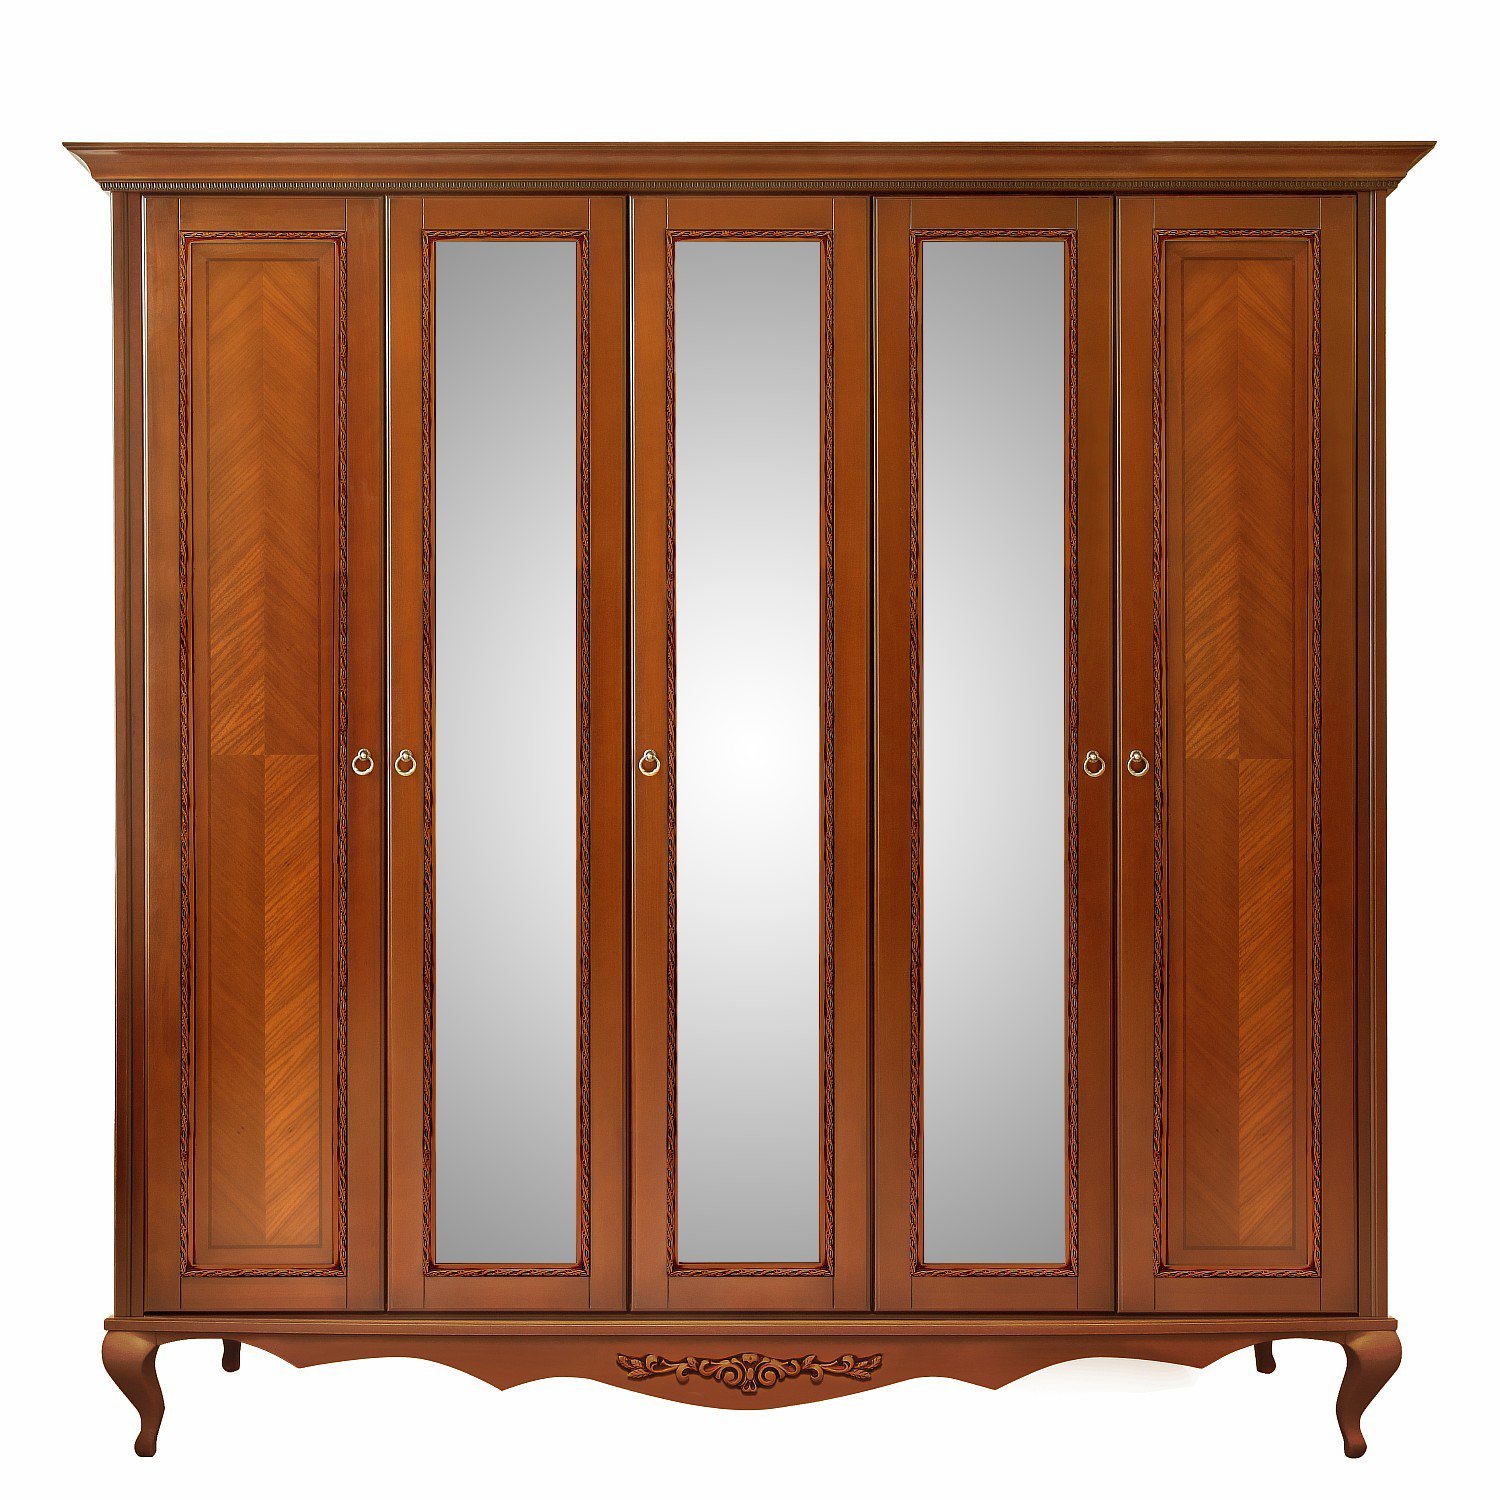 Шкаф платяной Timber Неаполь, 5-ти дверный с зеркалами 249x65x227 см, цвет: янтарь (Т-525/Y)Т-525